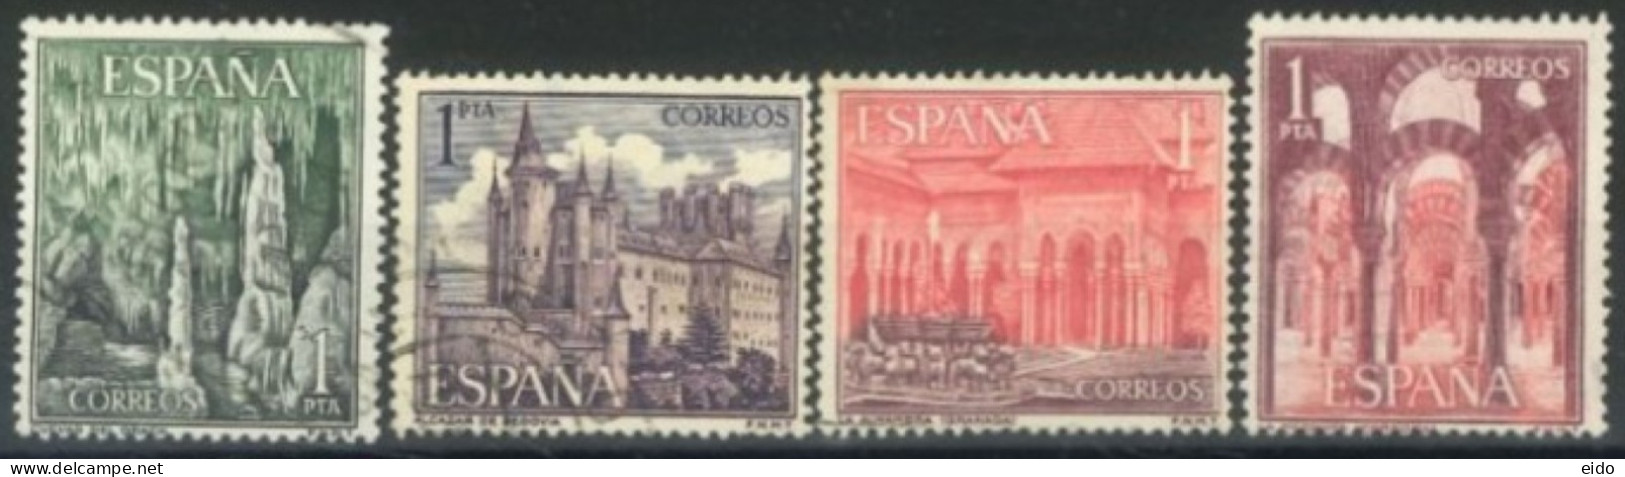 SPAIN, 1964, TORISM STAMPS SET OF 4, # 1205/08, USED. - Gebruikt